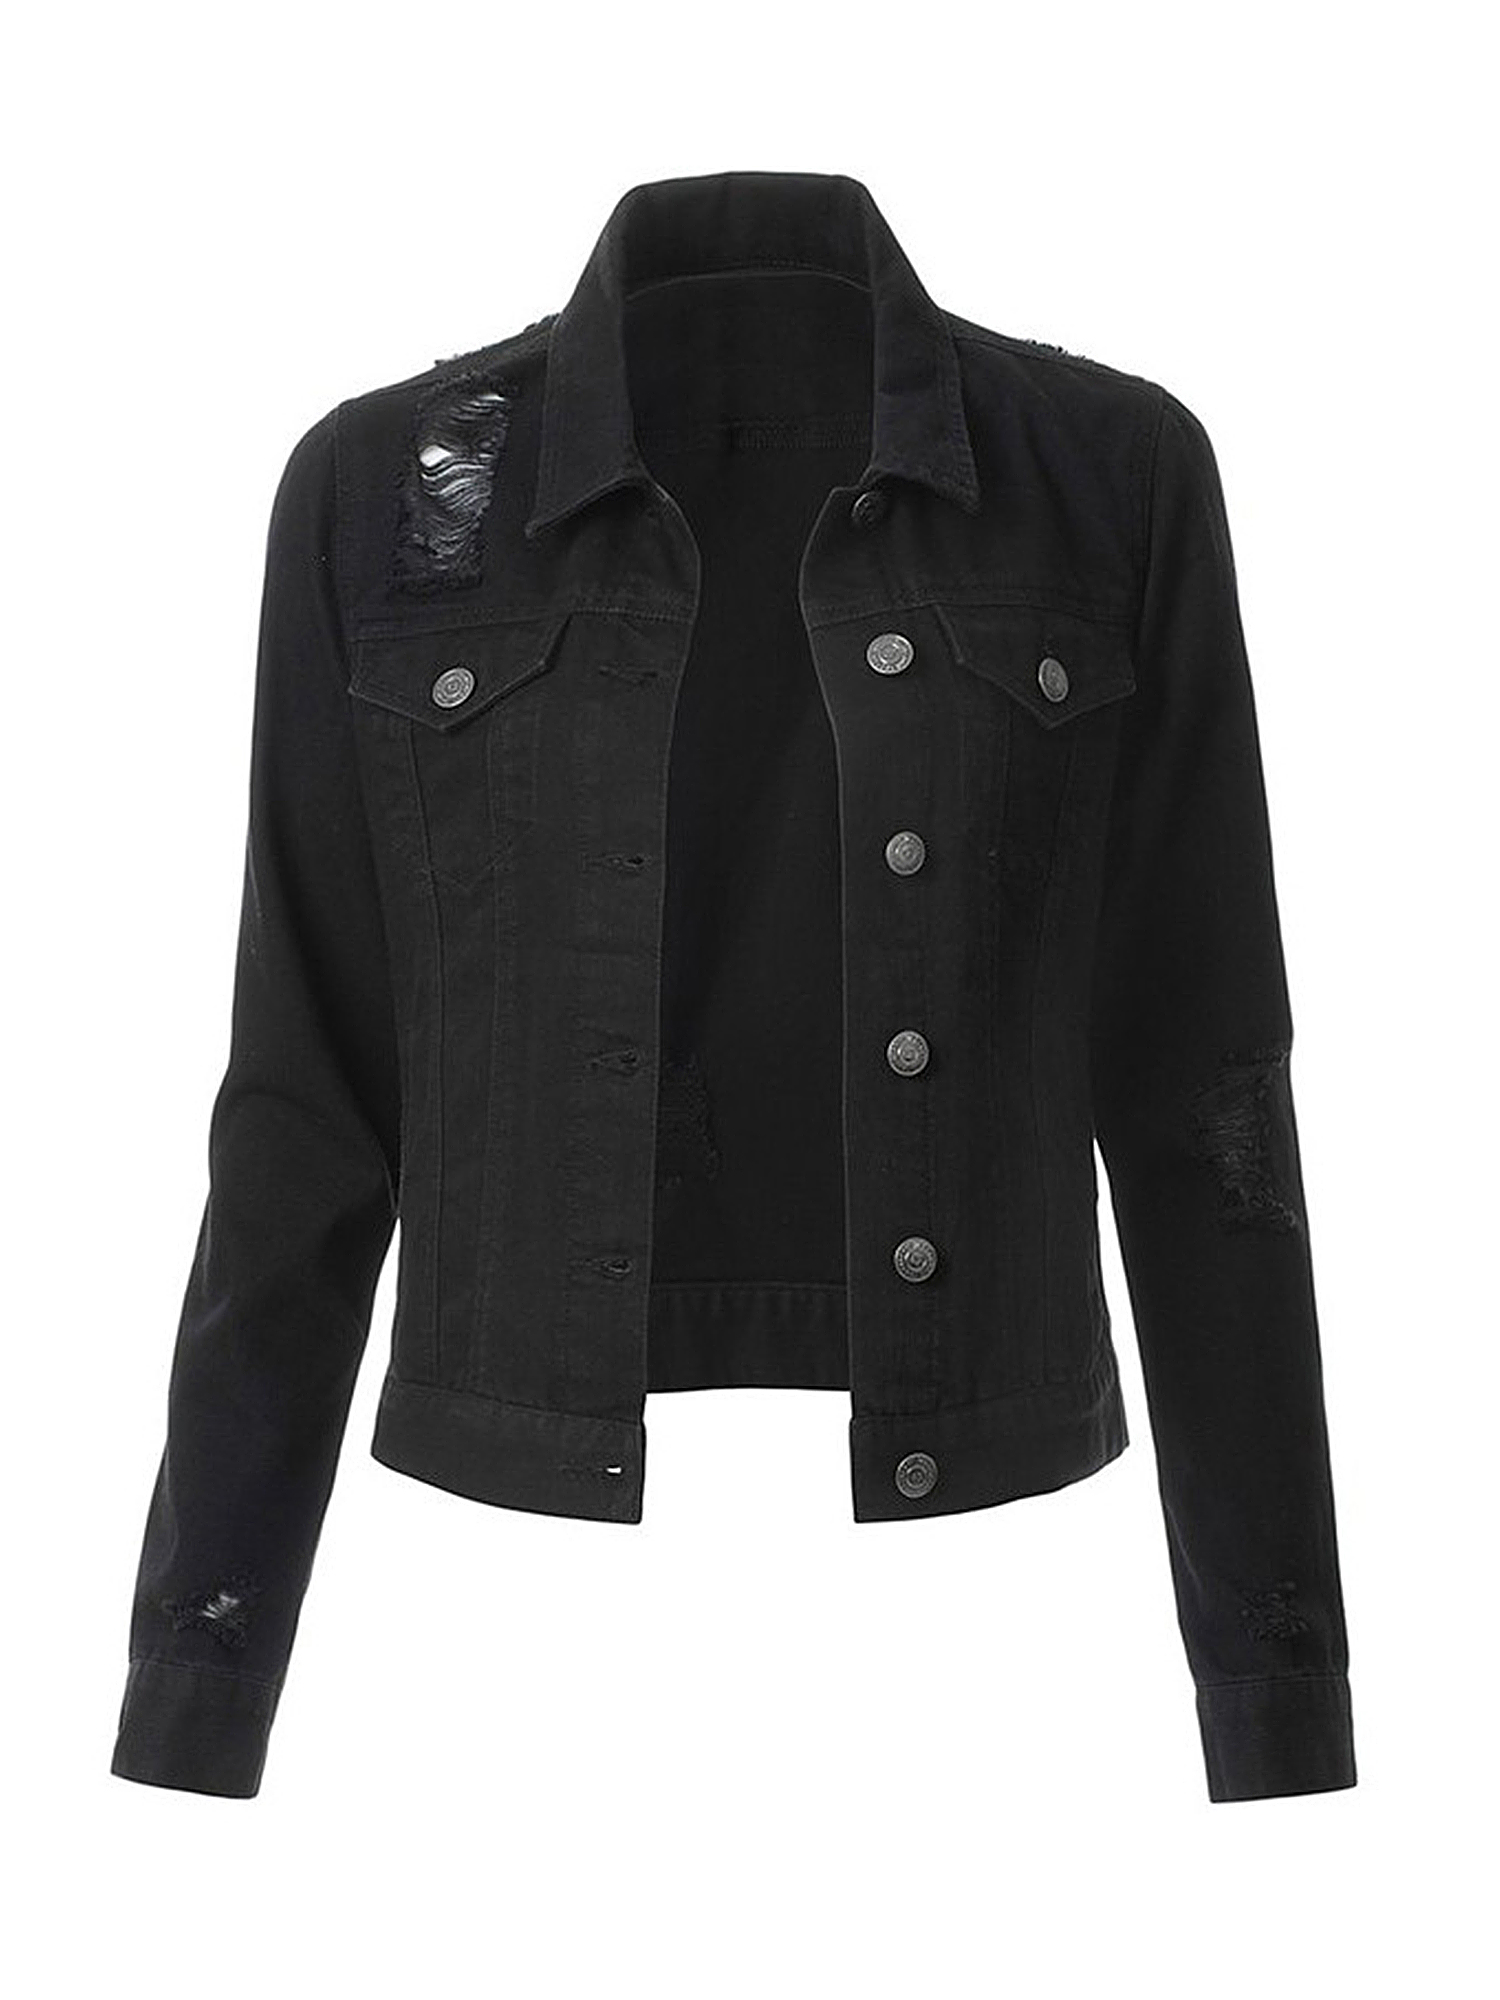 Oversize Denim Jacket for Women Ripped Jean Jacket Boyfriend Long Sleeve Coat - image 1 of 2